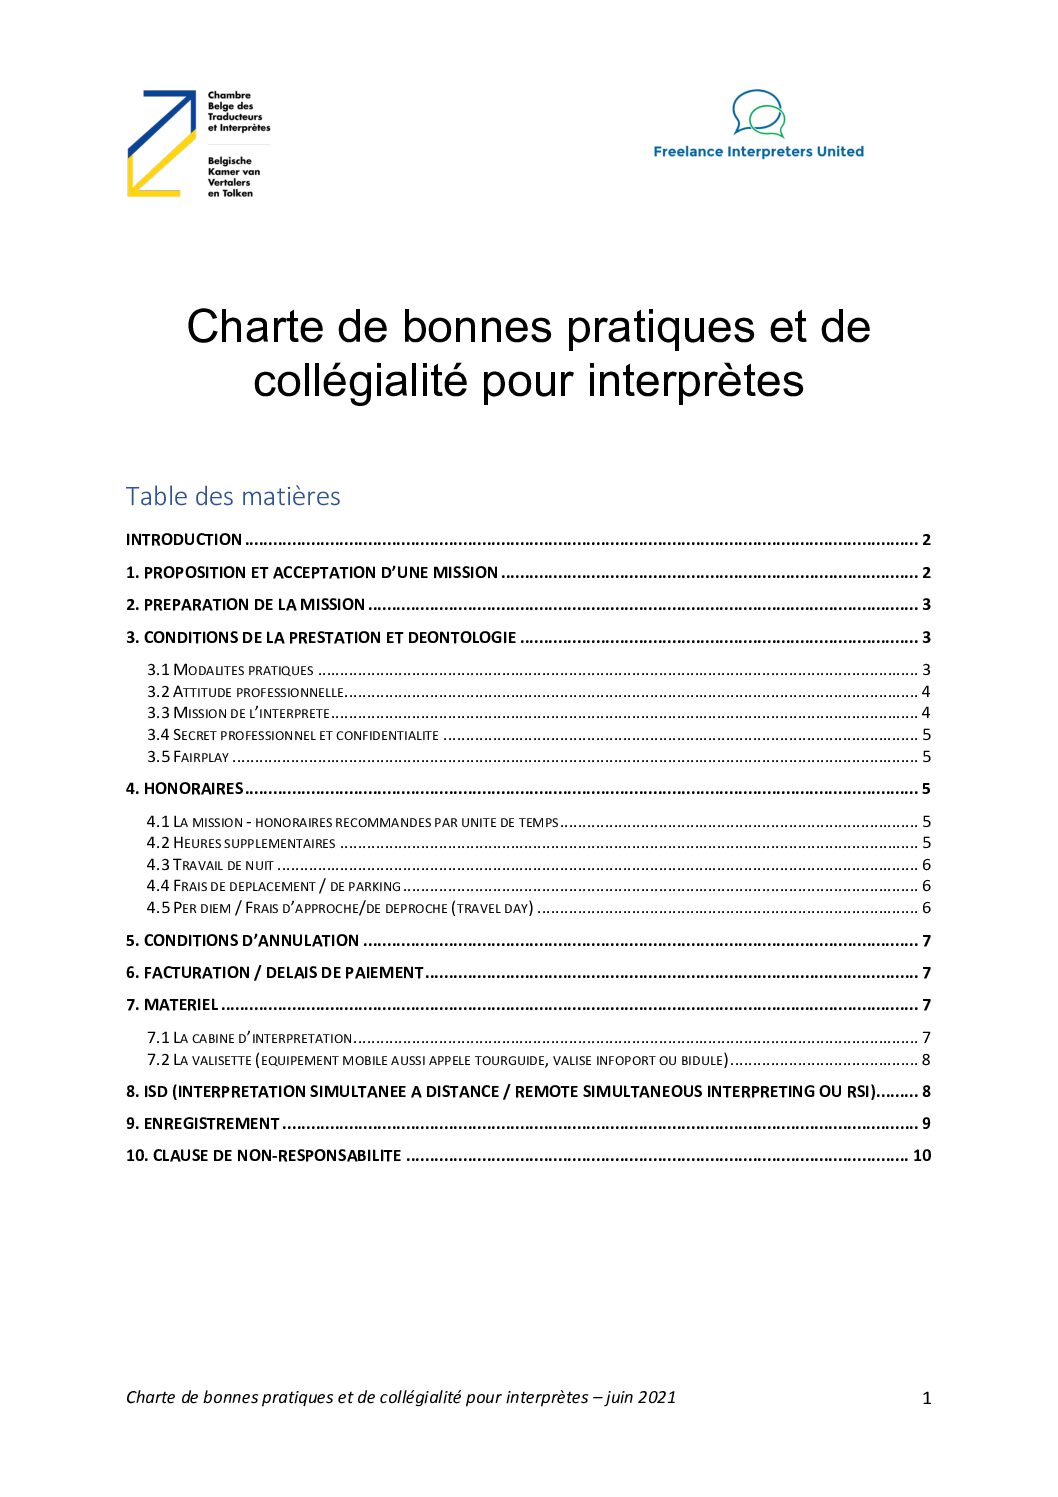 Image de présentation pour le document : Interprètes – Charte de bonnes pratiques de collégialité